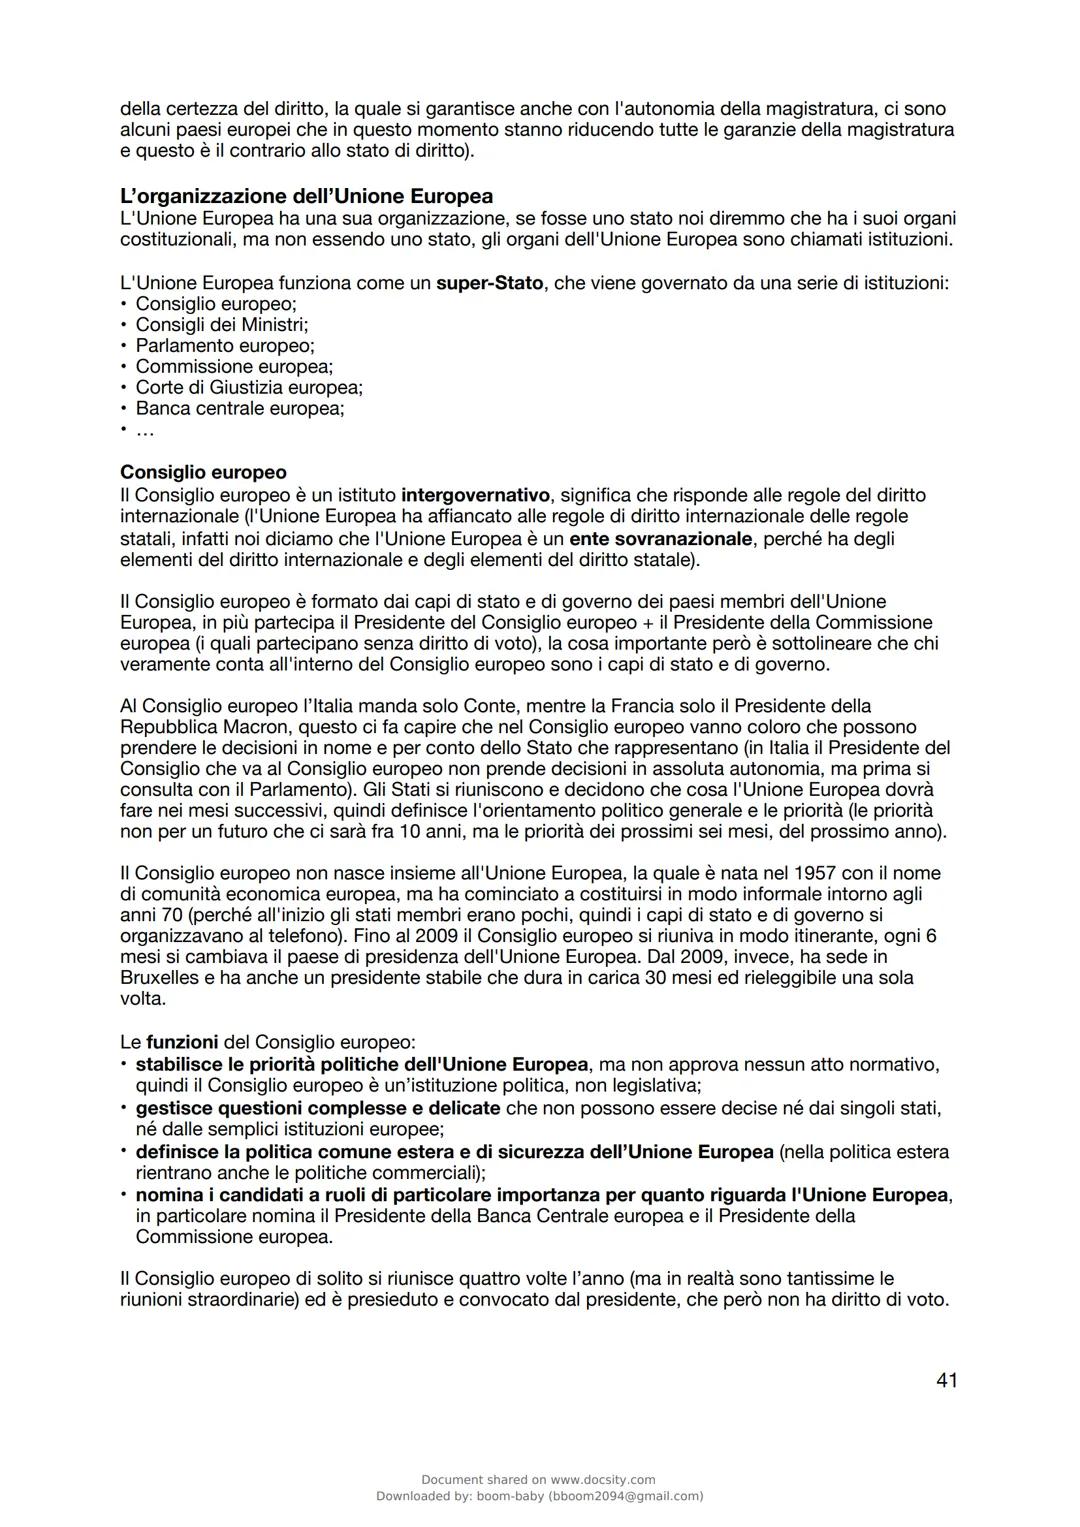 docsity
Appunti A.Papa Istituzioni di
diritto pubblico
Istituzioni Di Diritto Pubblico
L'Università degli Studi di Napoli Parthenope
53 pag.